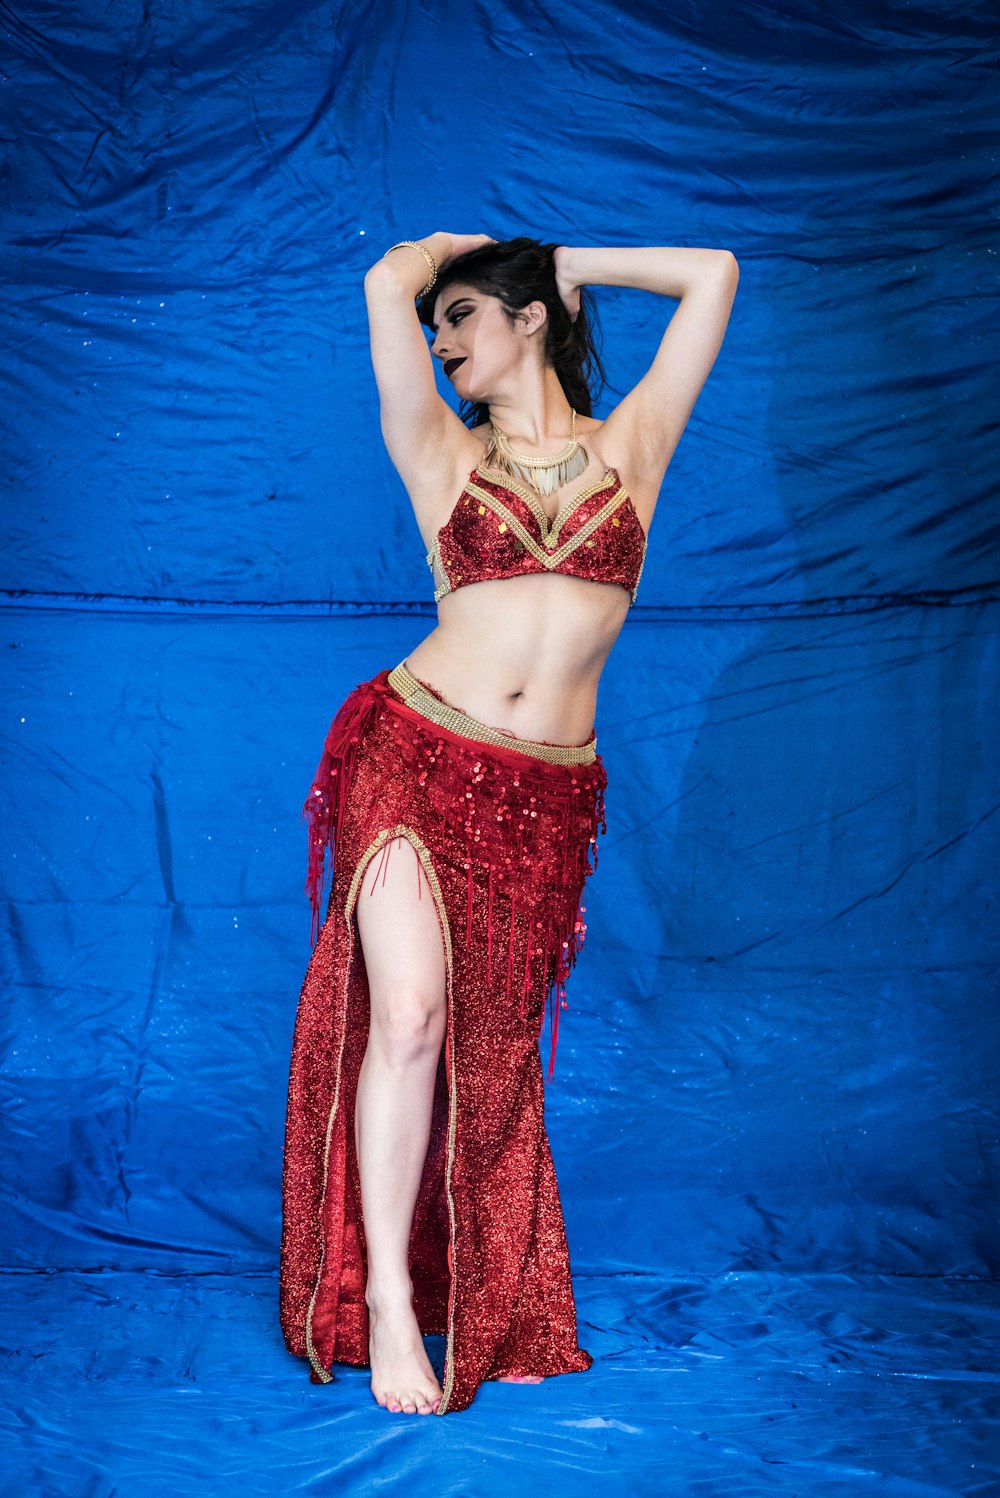 Bailarina Tradicional Hermoso. Mujer Oriental Del Bailarín. Danza Del  Vientre. Fotos, retratos, imágenes y fotografía de archivo libres de  derecho. Image 57788209